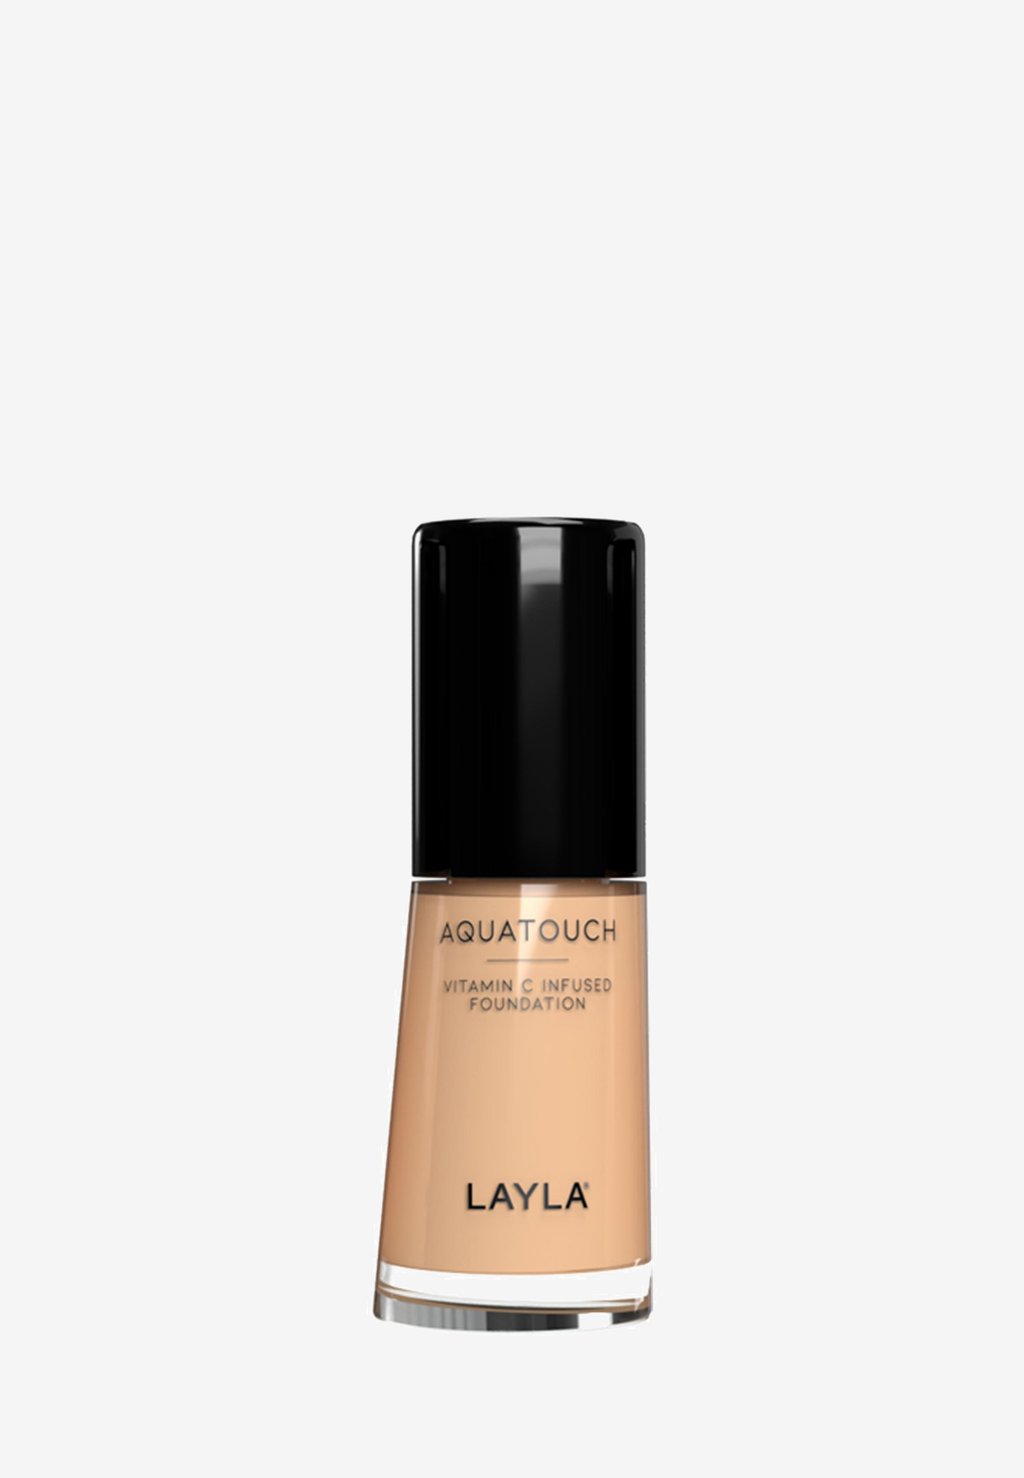 Тональная основа AQUATOUCH FOUNDATION Layla Cosmetics, цвет 4